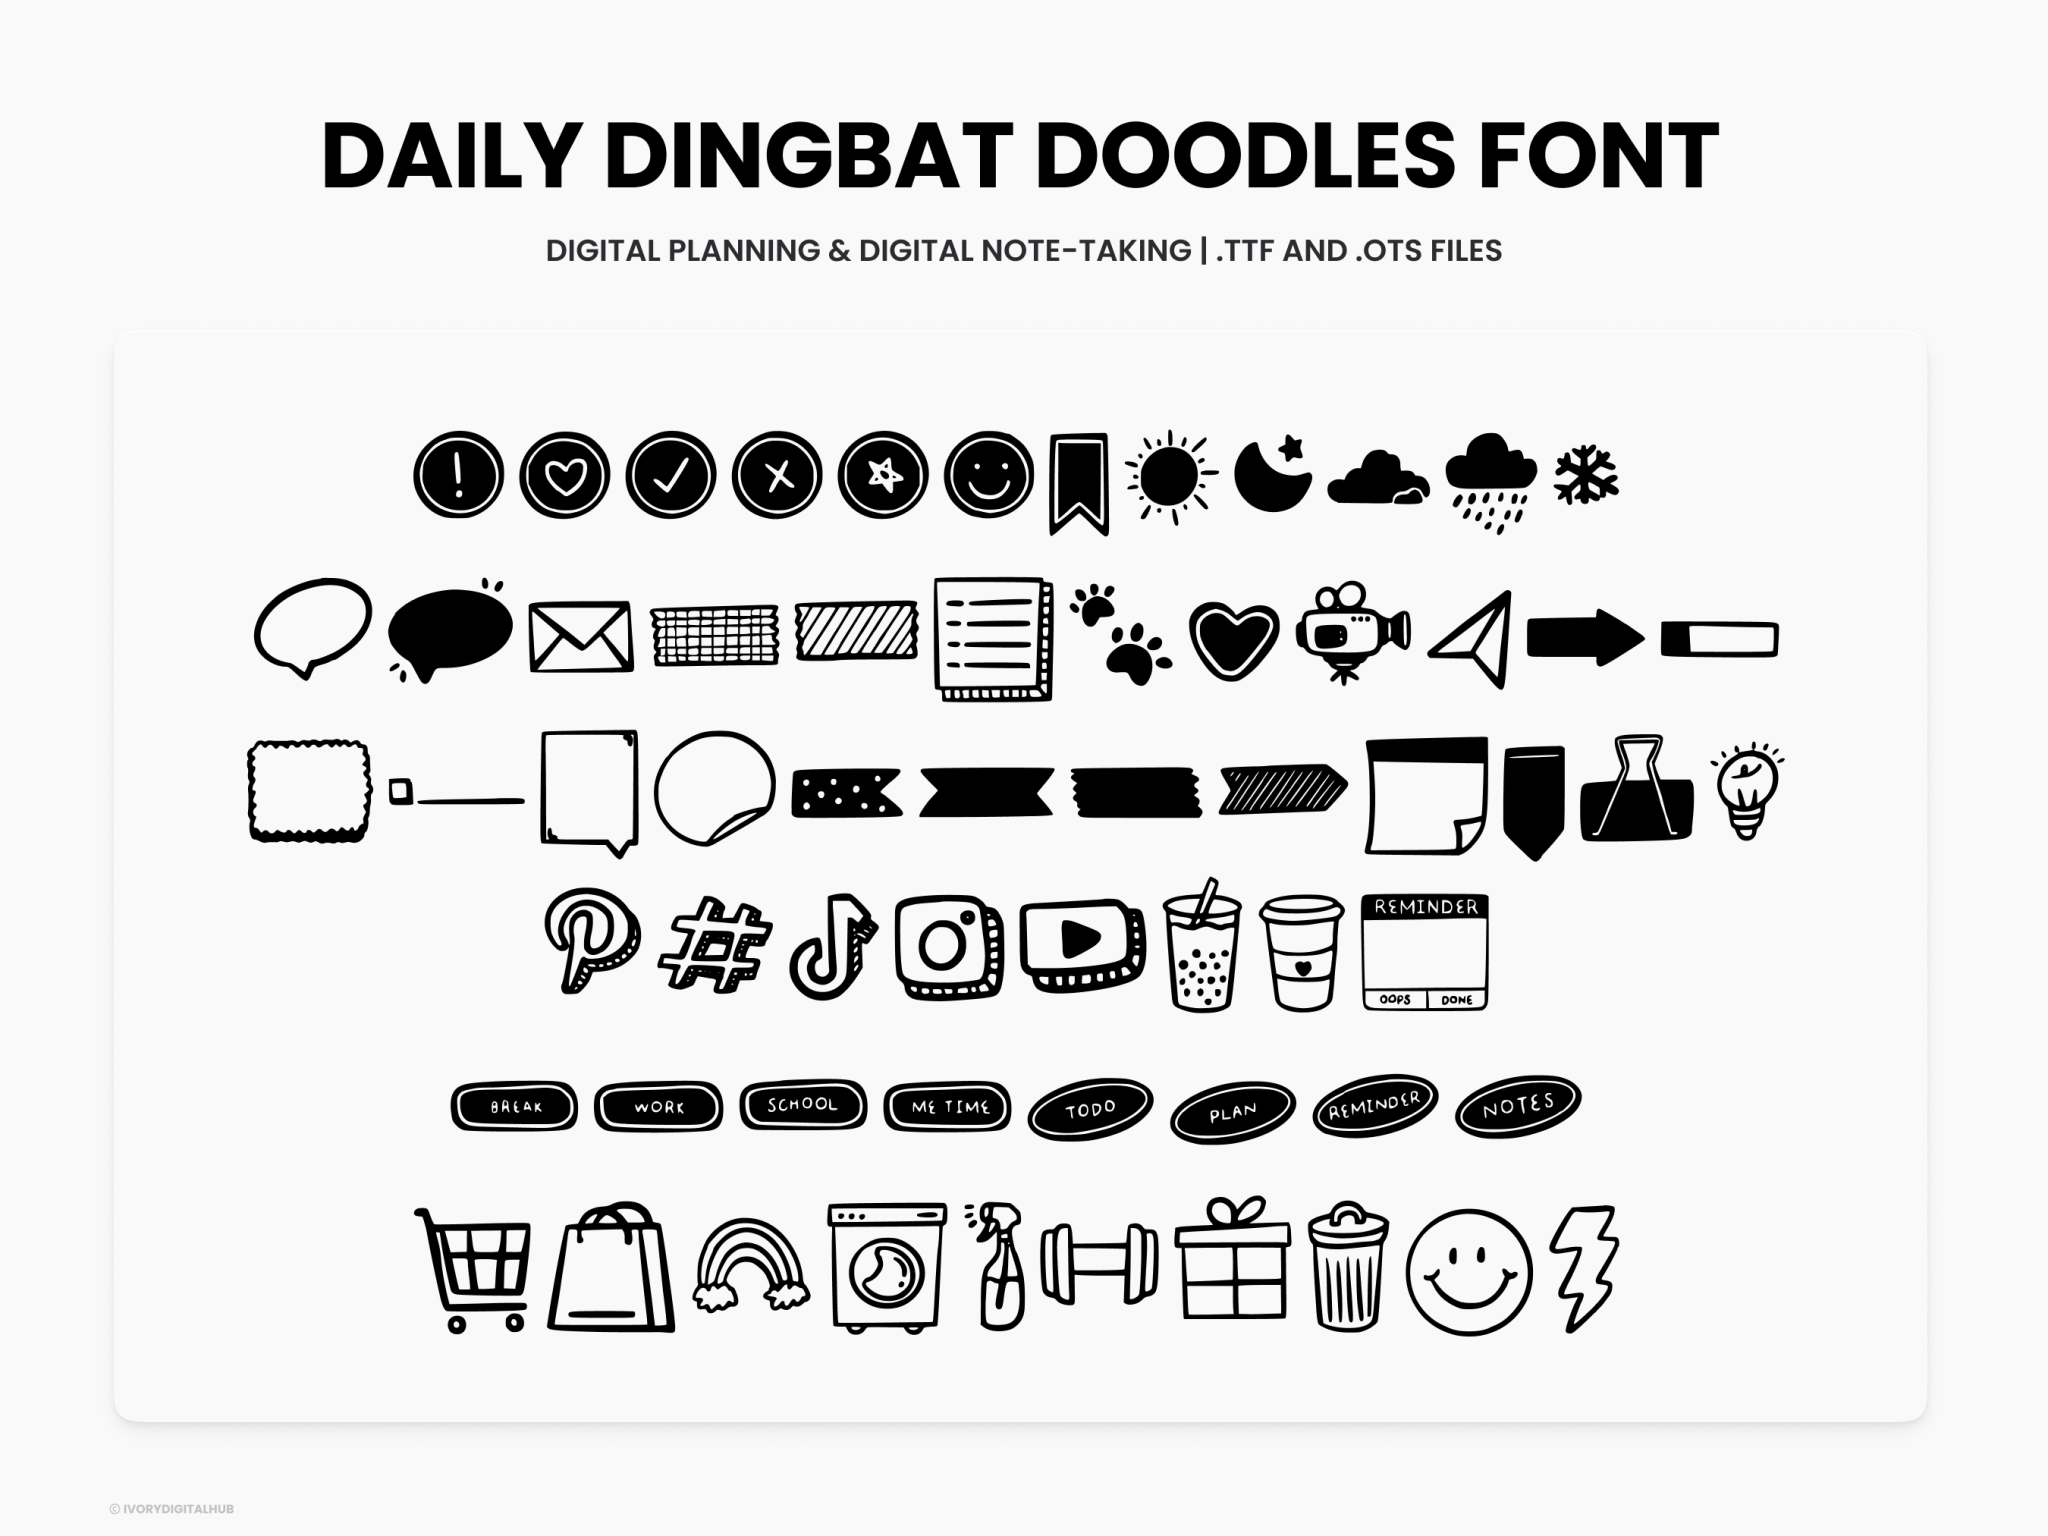 Daily Dingbat Doodles Font